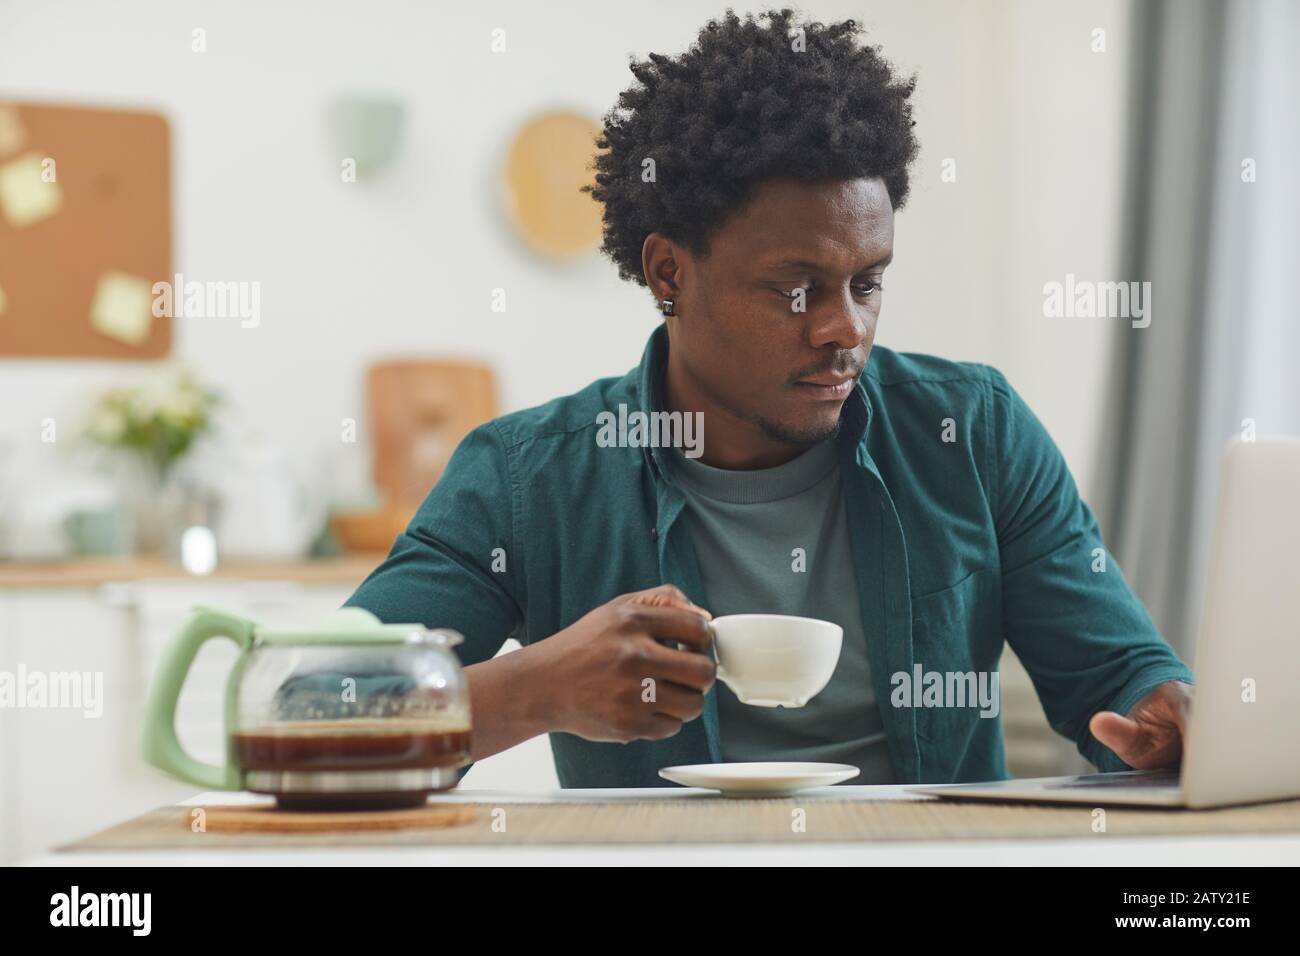 Junger Afrikaner, der zu Hause online arbeitet, hält eine Tasse Kaffee und tippt auf dem Laptop Stockfoto